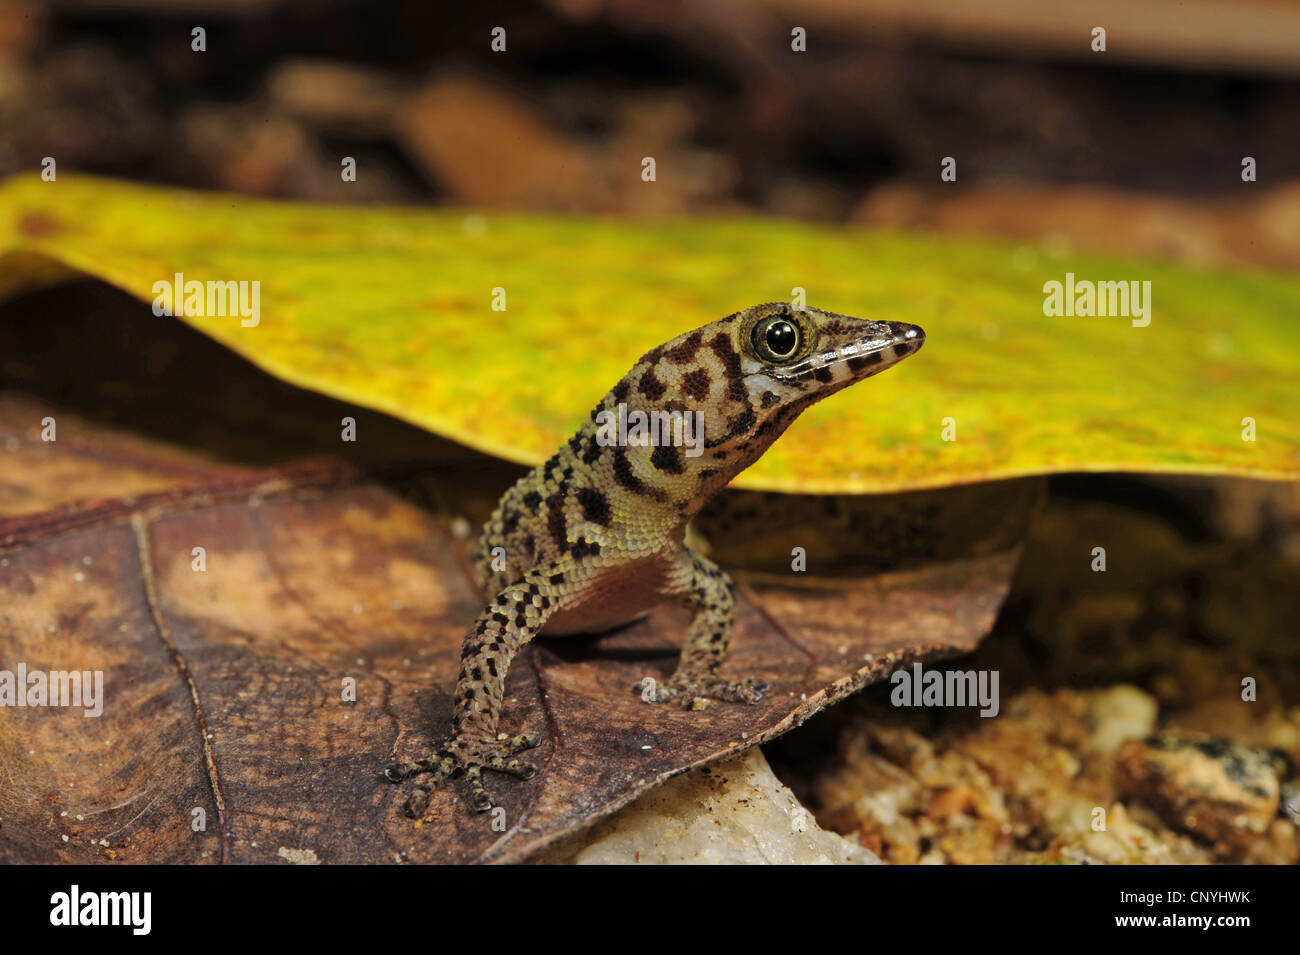 Bay Island almeno Gecko Bay Island dwarf gecko (Sphaerodactylus rosaurae), seduta su una foglia, Honduras, Roatan, isole di Bay Foto Stock